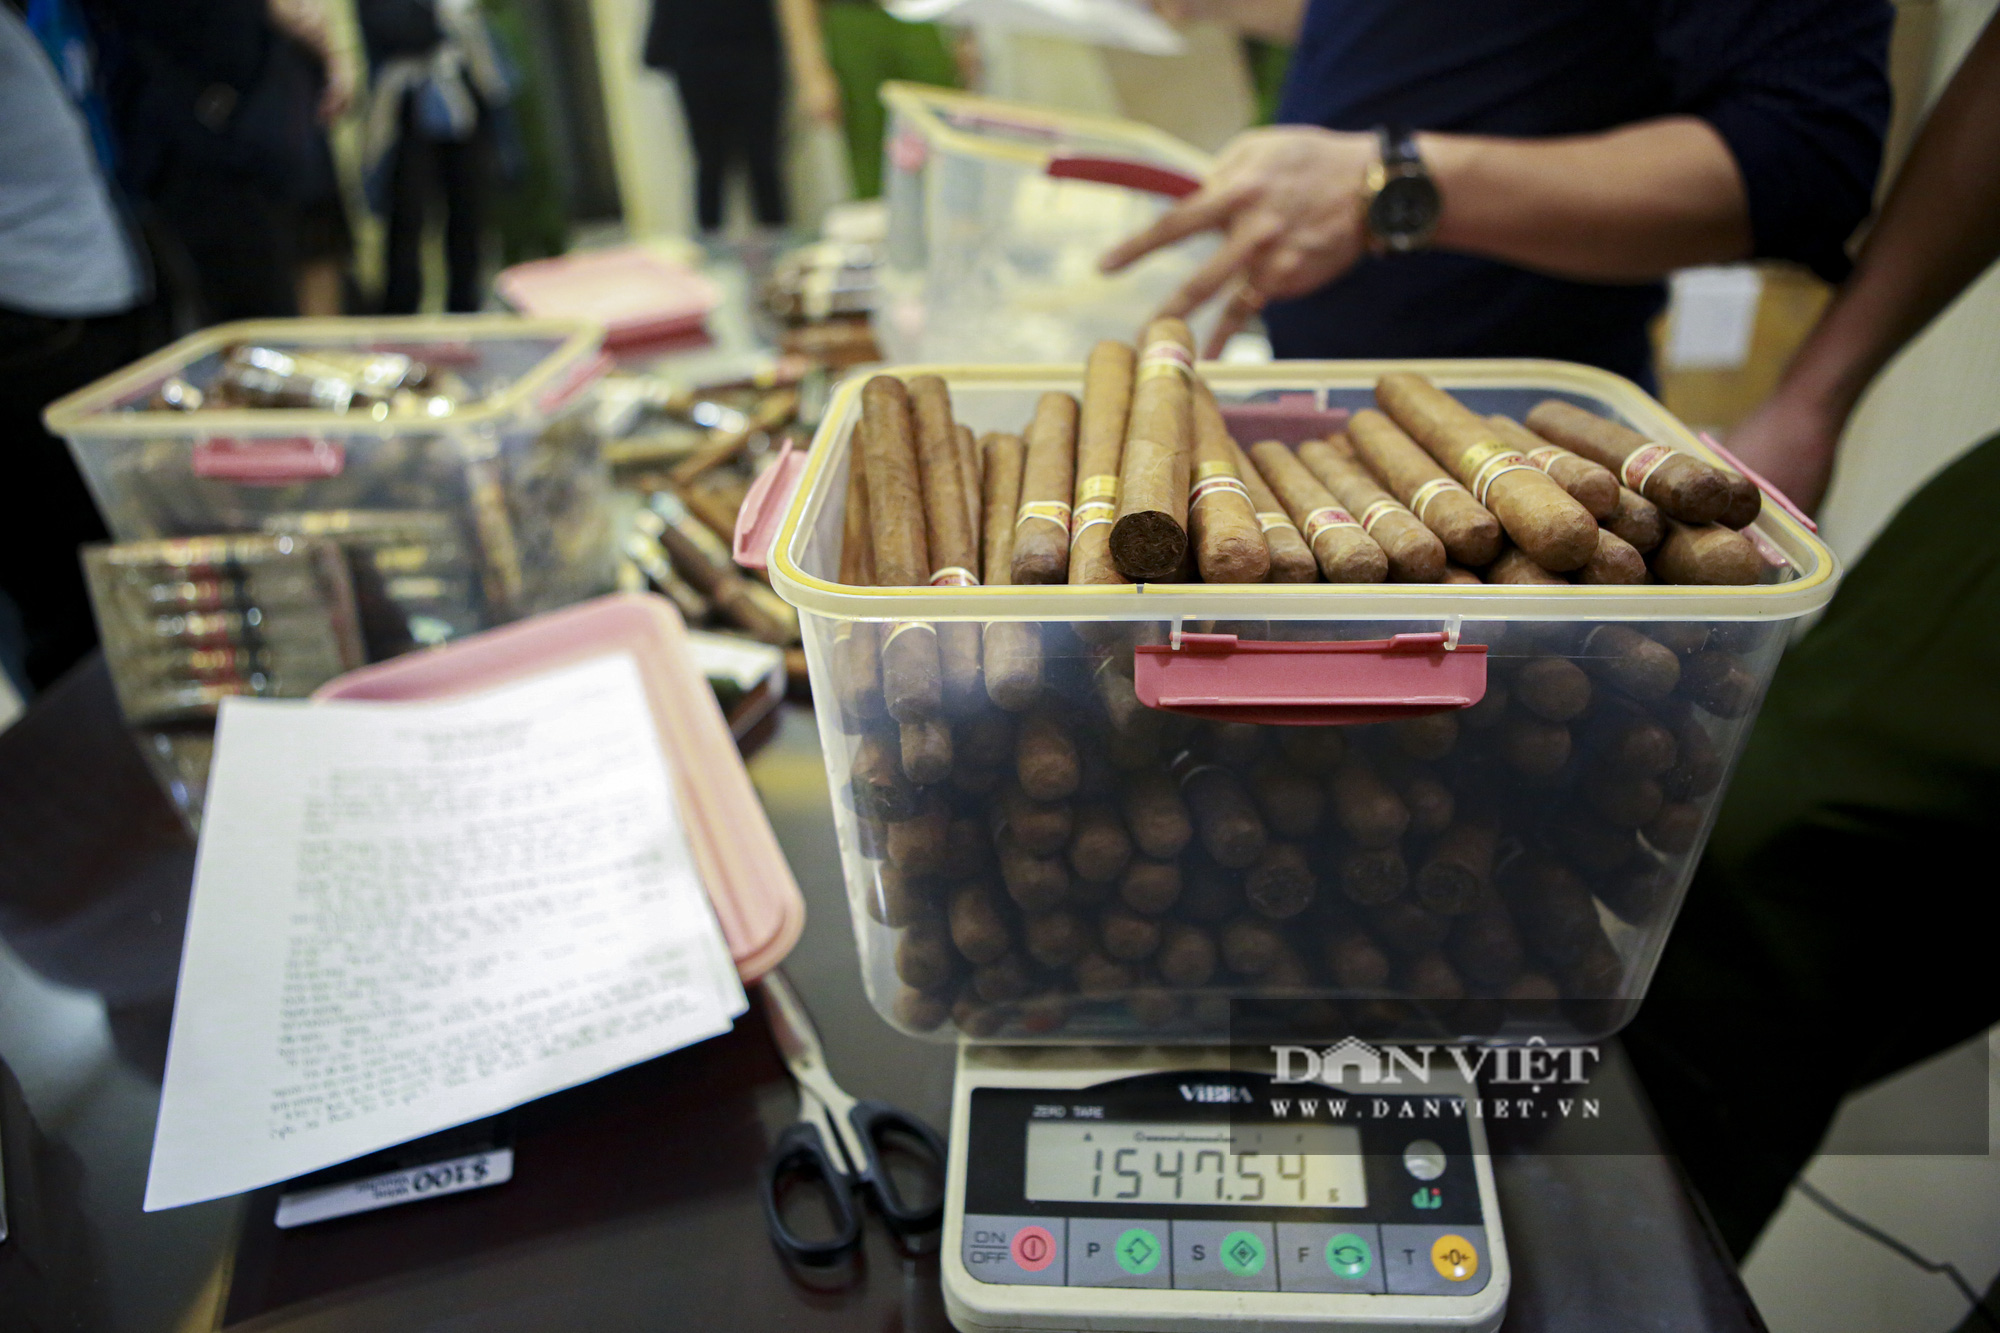 Phá đường dây buôn lậu cigar gần 2 tỷ đồng do tiếp viên hàng không cầm đầu - Ảnh 3.